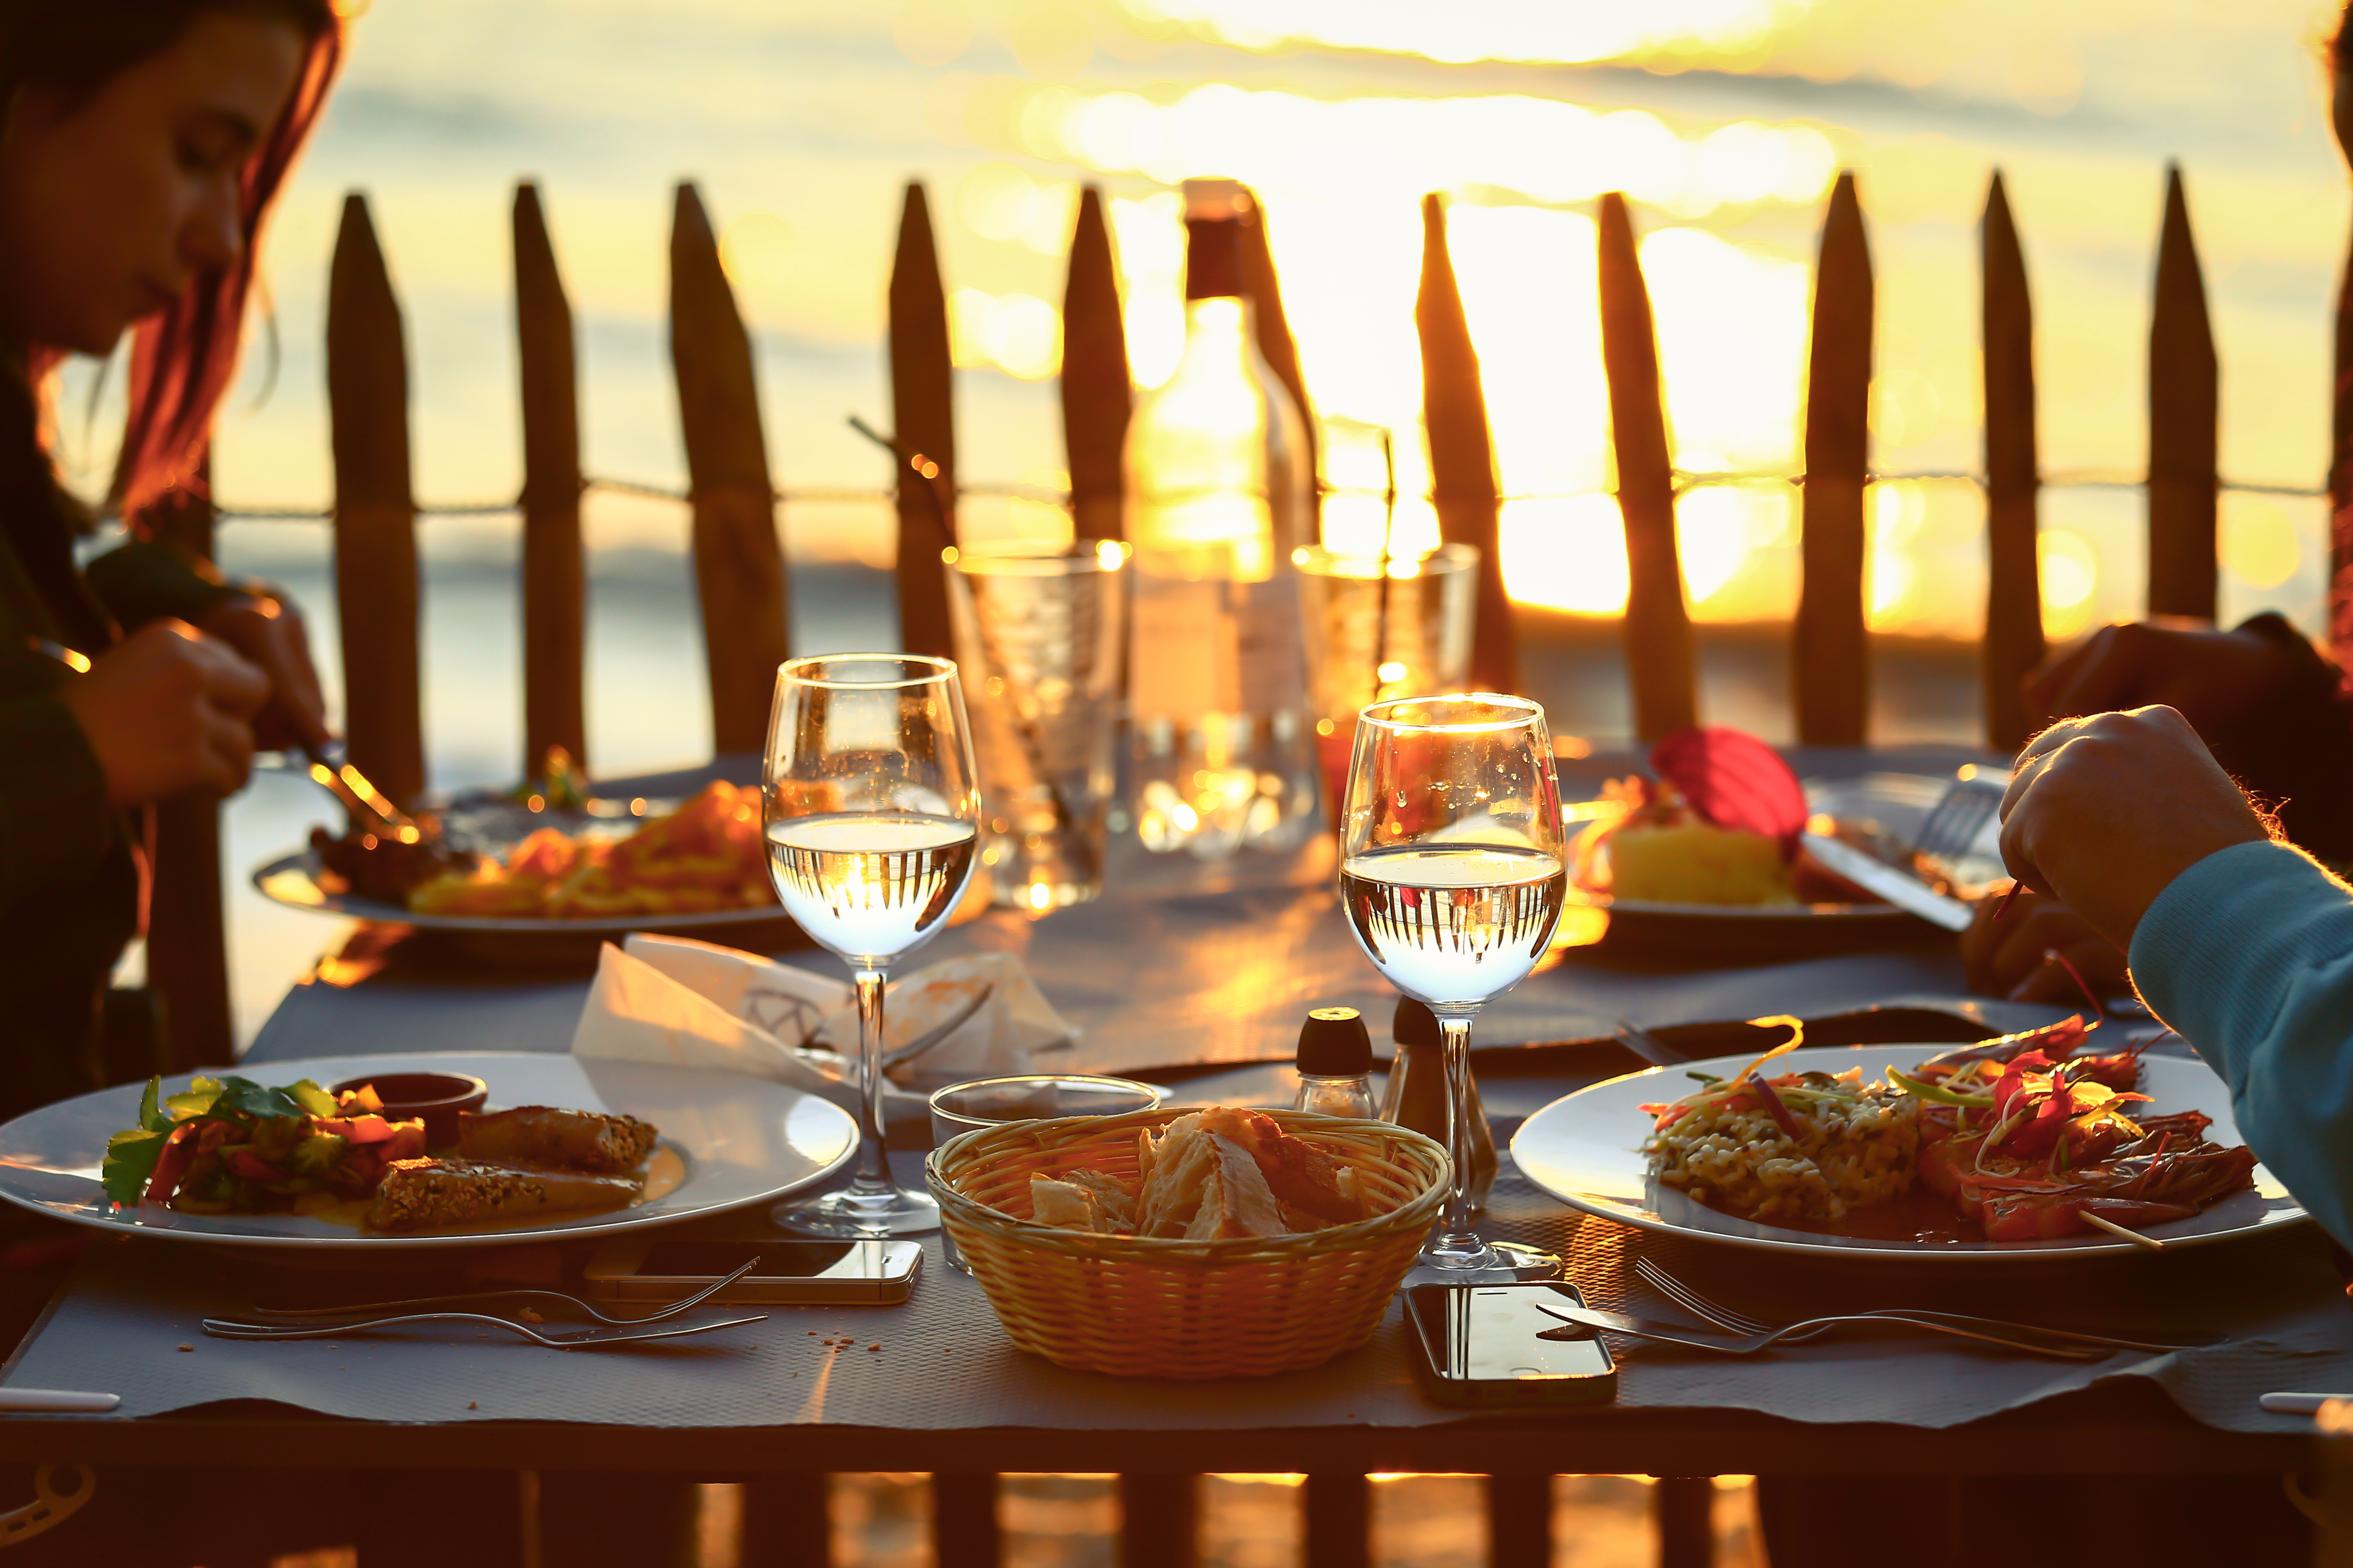 Abendessen am Wasser | Quelle: Shutterstock